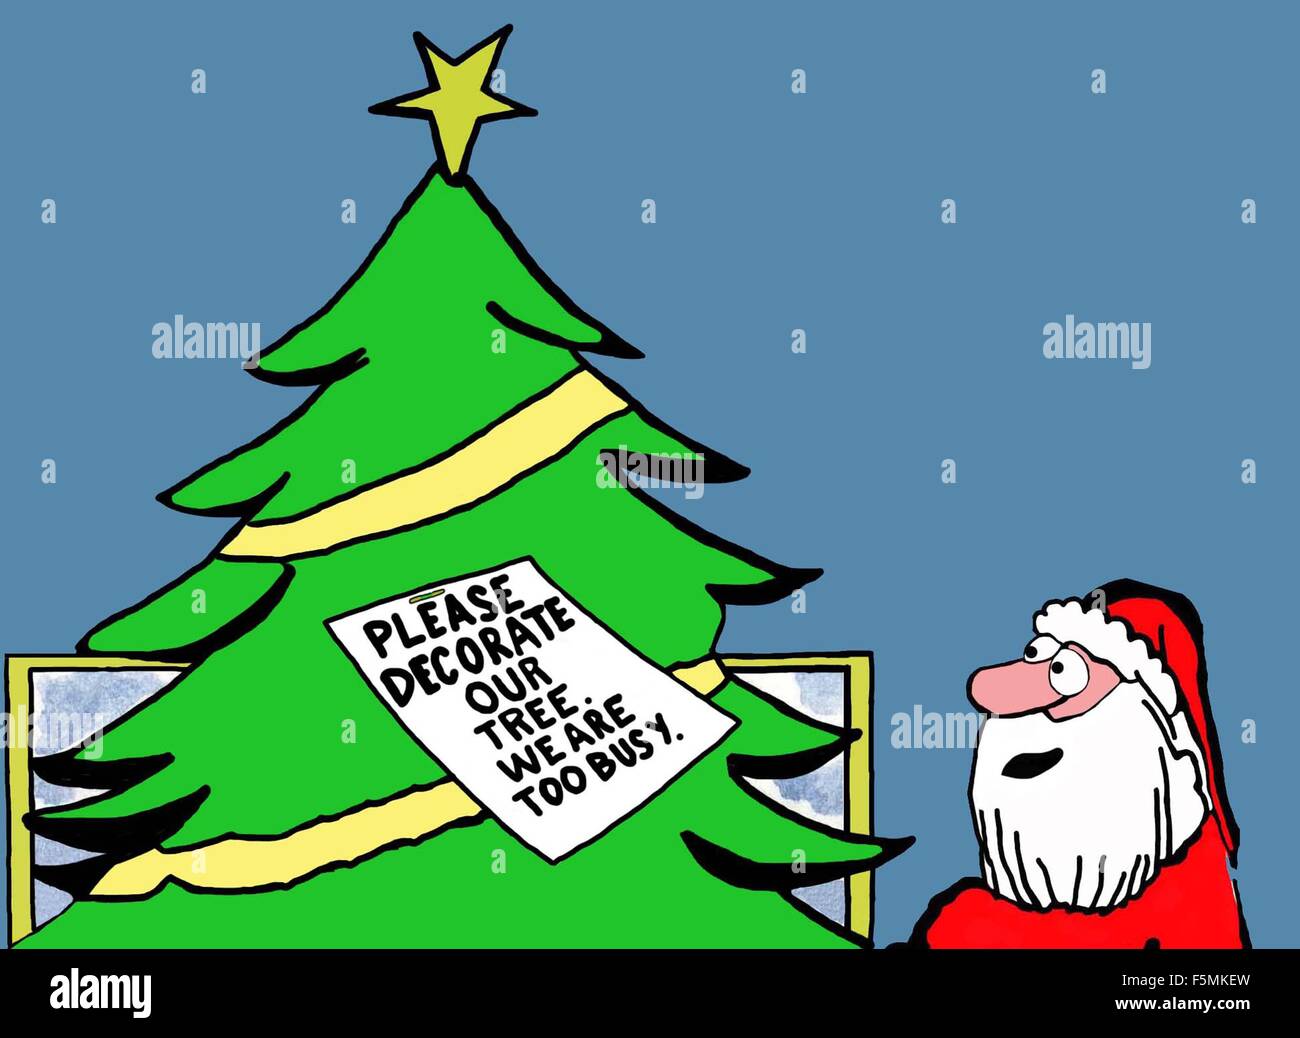 Weihnachten Cartoon von Santa Blick auf einen leeren Baum.  Ein Hinweis darauf liest "bitte unser Baum schmücken.  Wir sind zu sehr damit beschäftigt ". Stockfoto